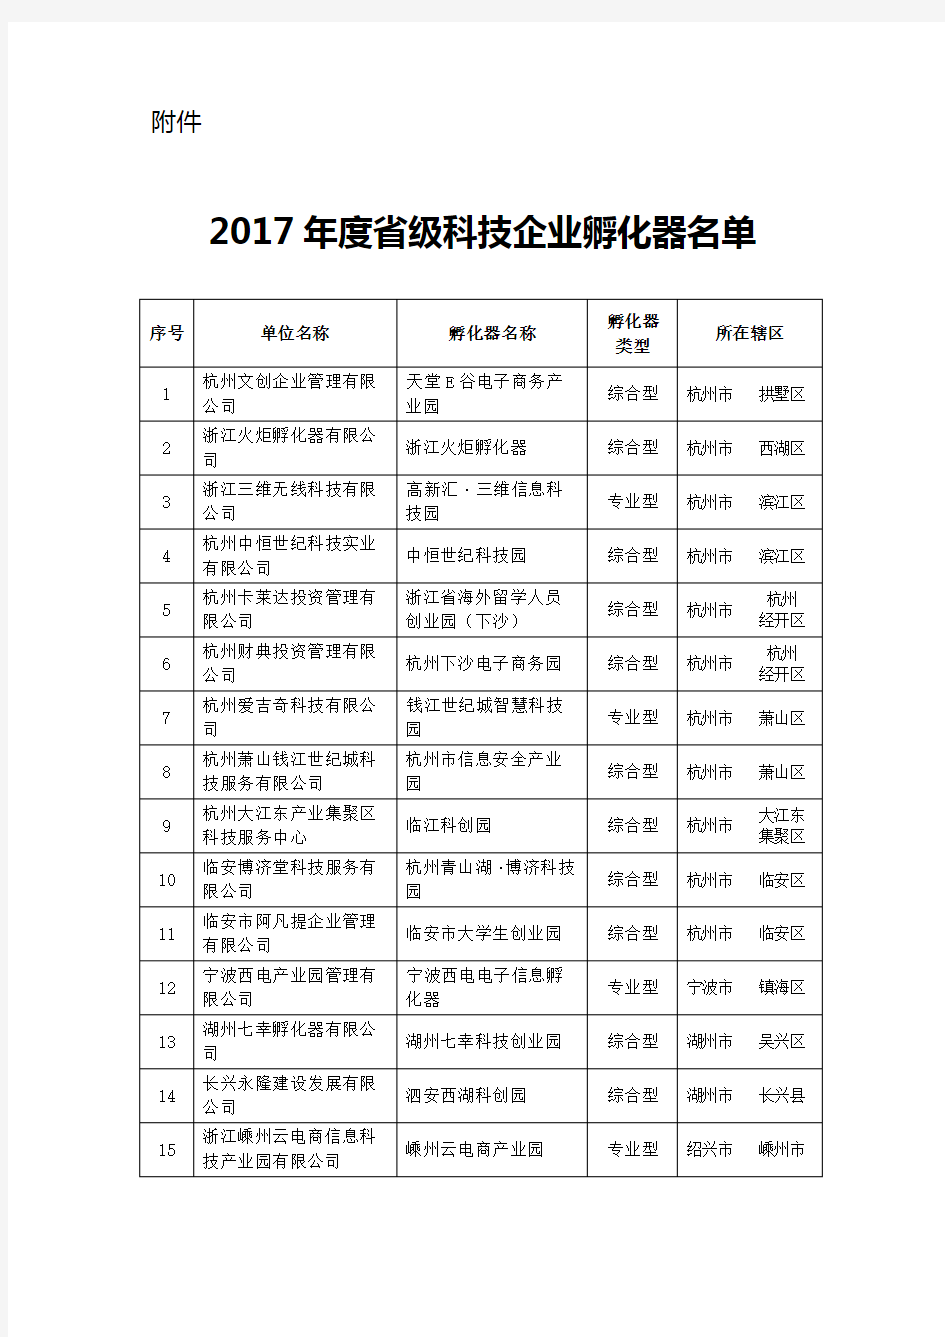 2017年度浙江省省级科技企业孵化器名单